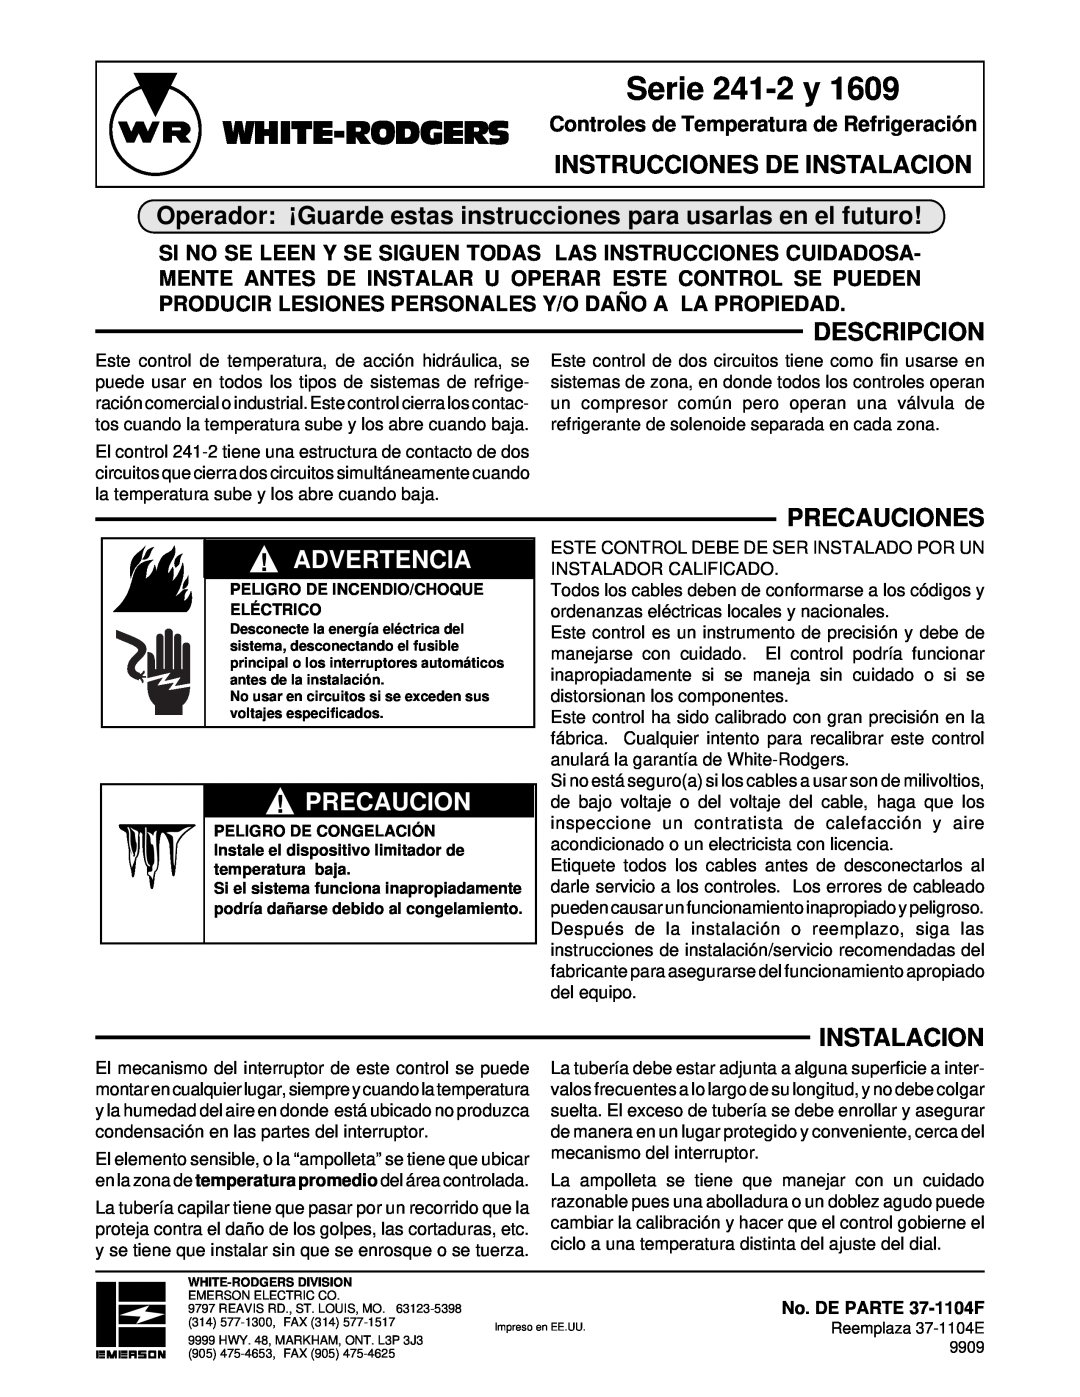 White Rodgers 1609 Serie 241-2 y, Instrucciones De Instalacion, Descripcion, Advertencia, Precauciones, Cautionprecaucion 